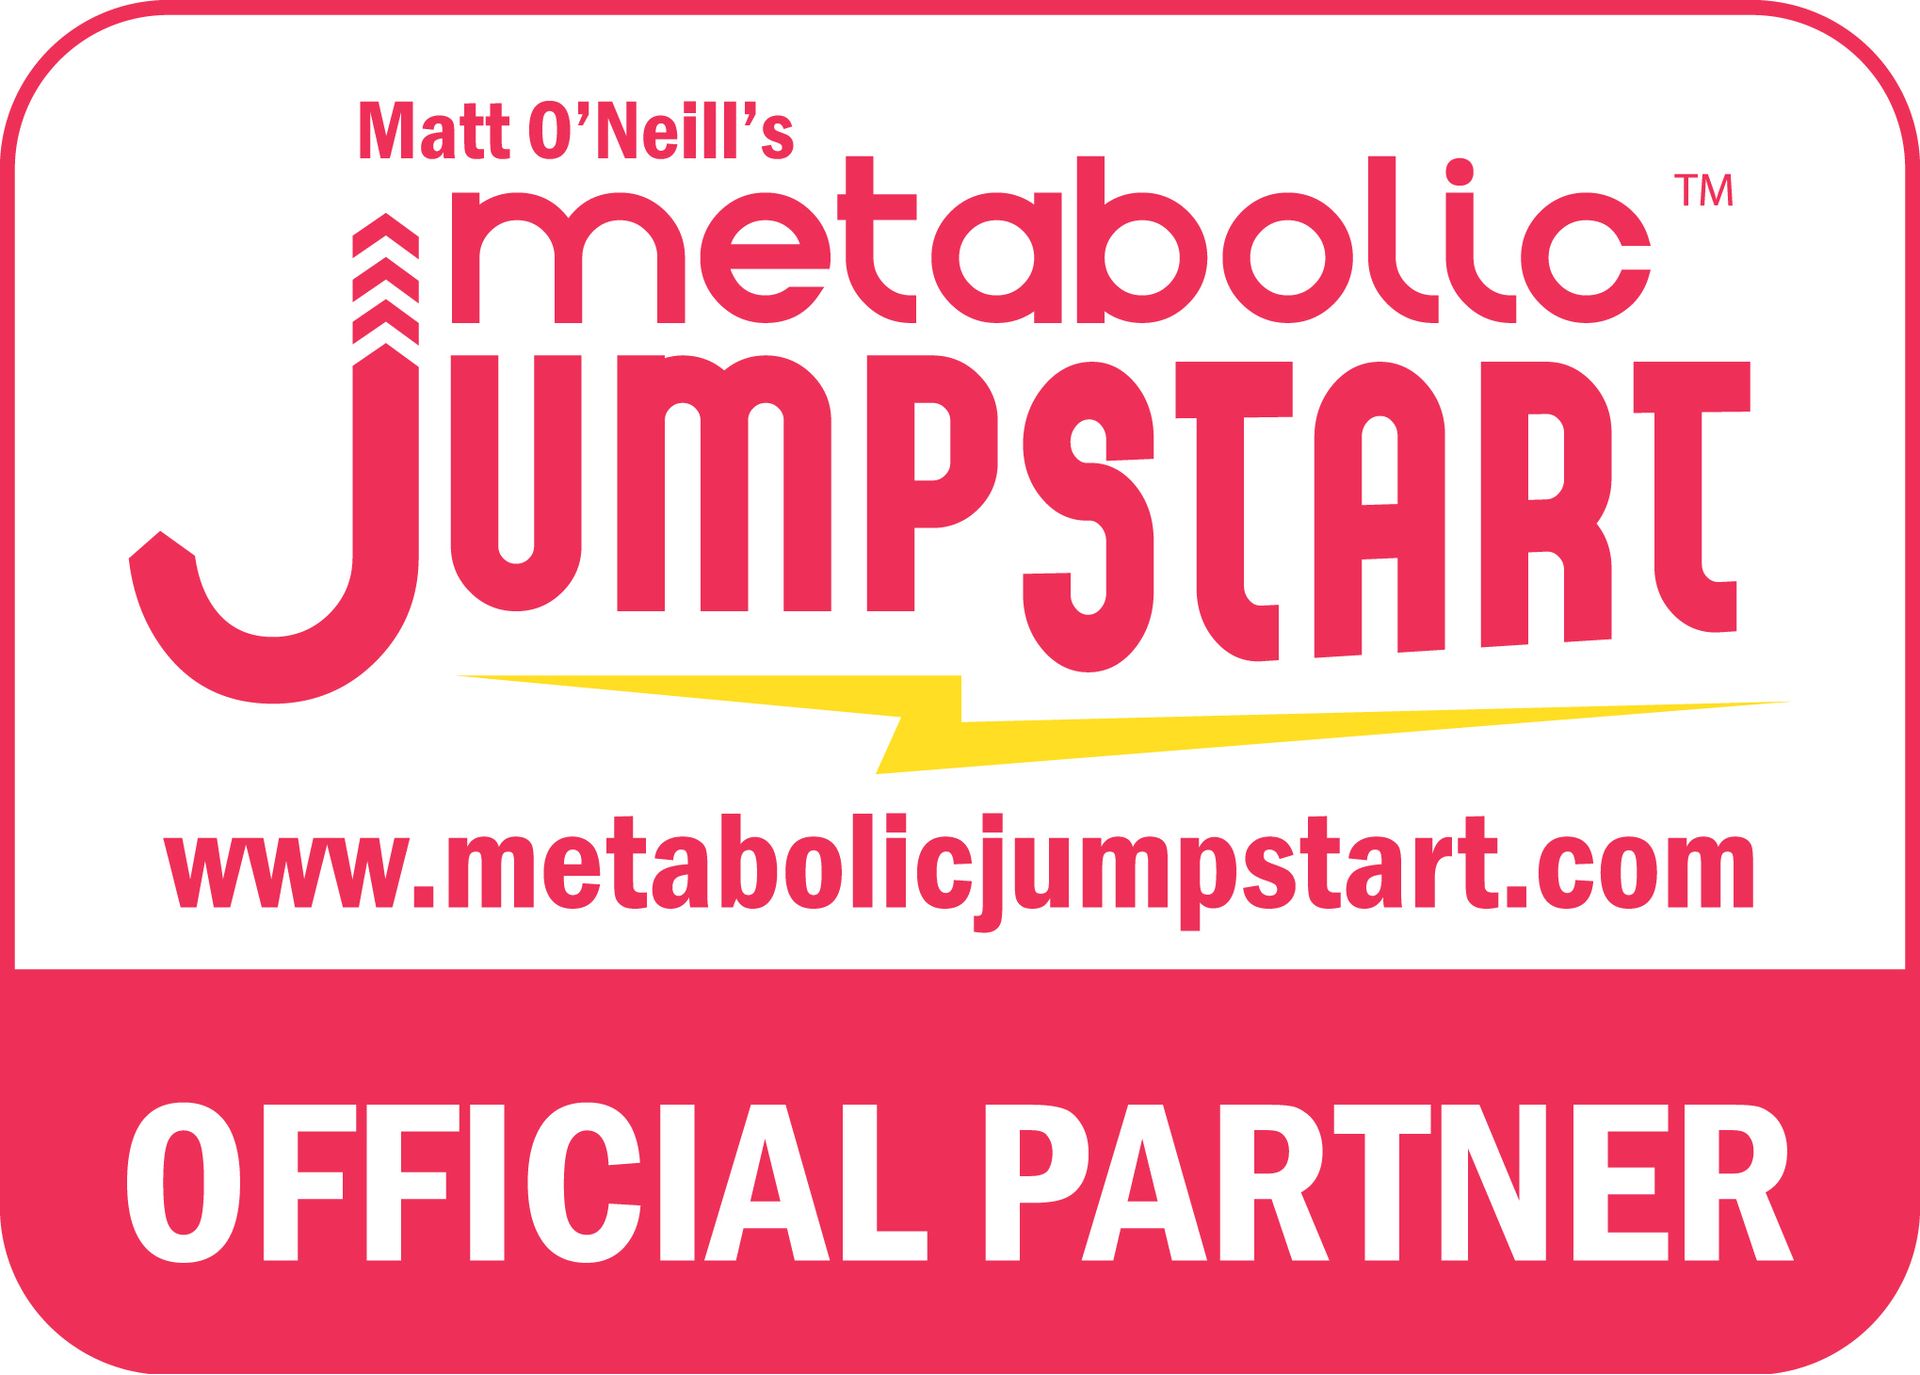 Metabolic Jumpstart Official Partner